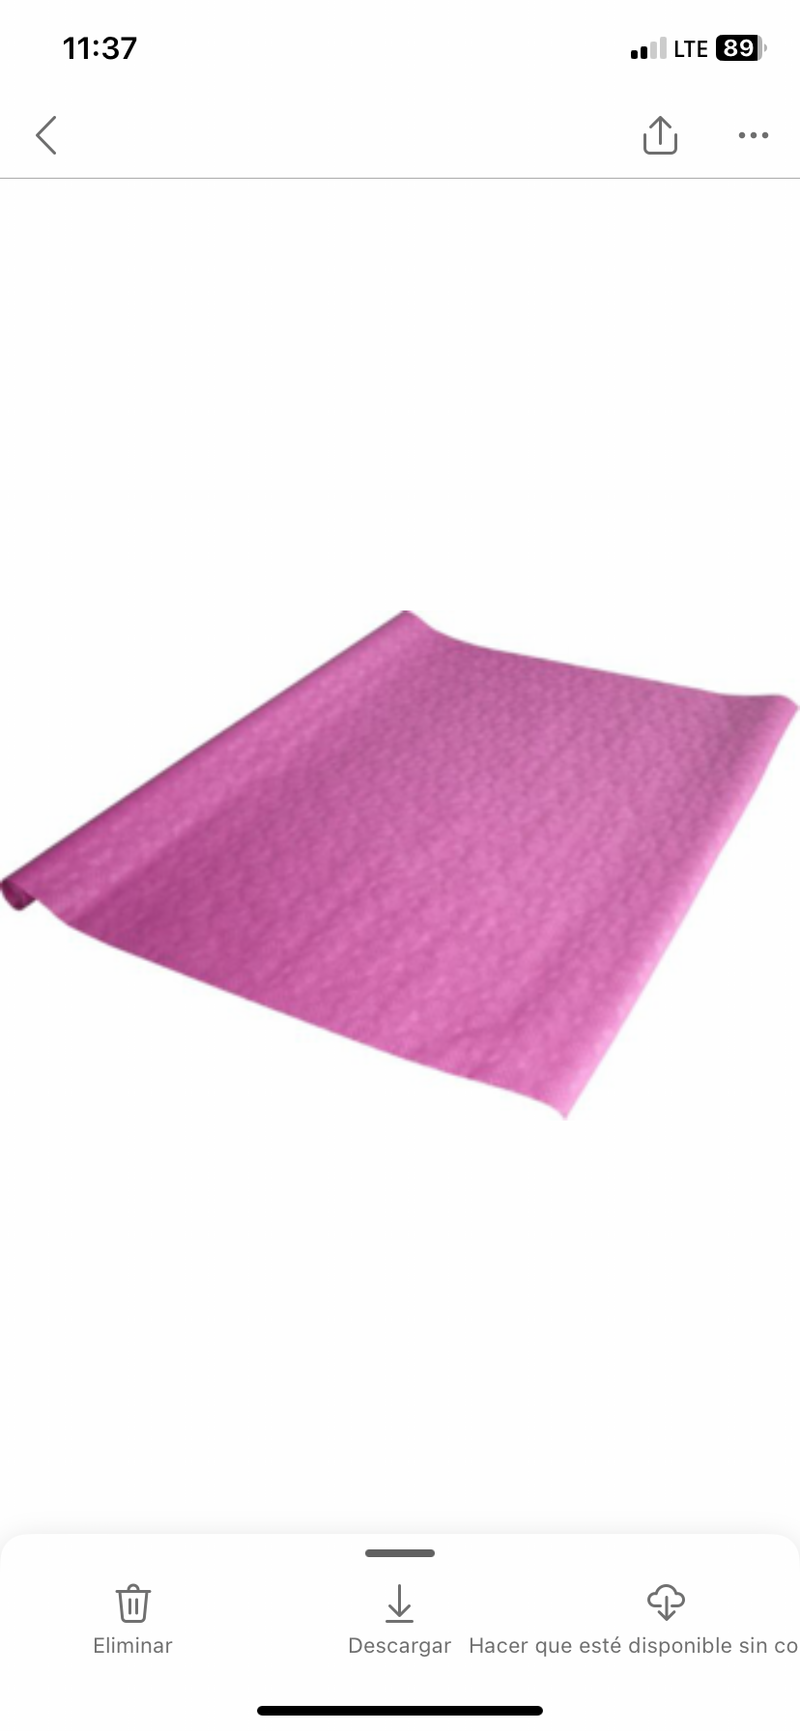 Papier-Tischtuchrolle m. Damastprägung, 8m*1m, pink